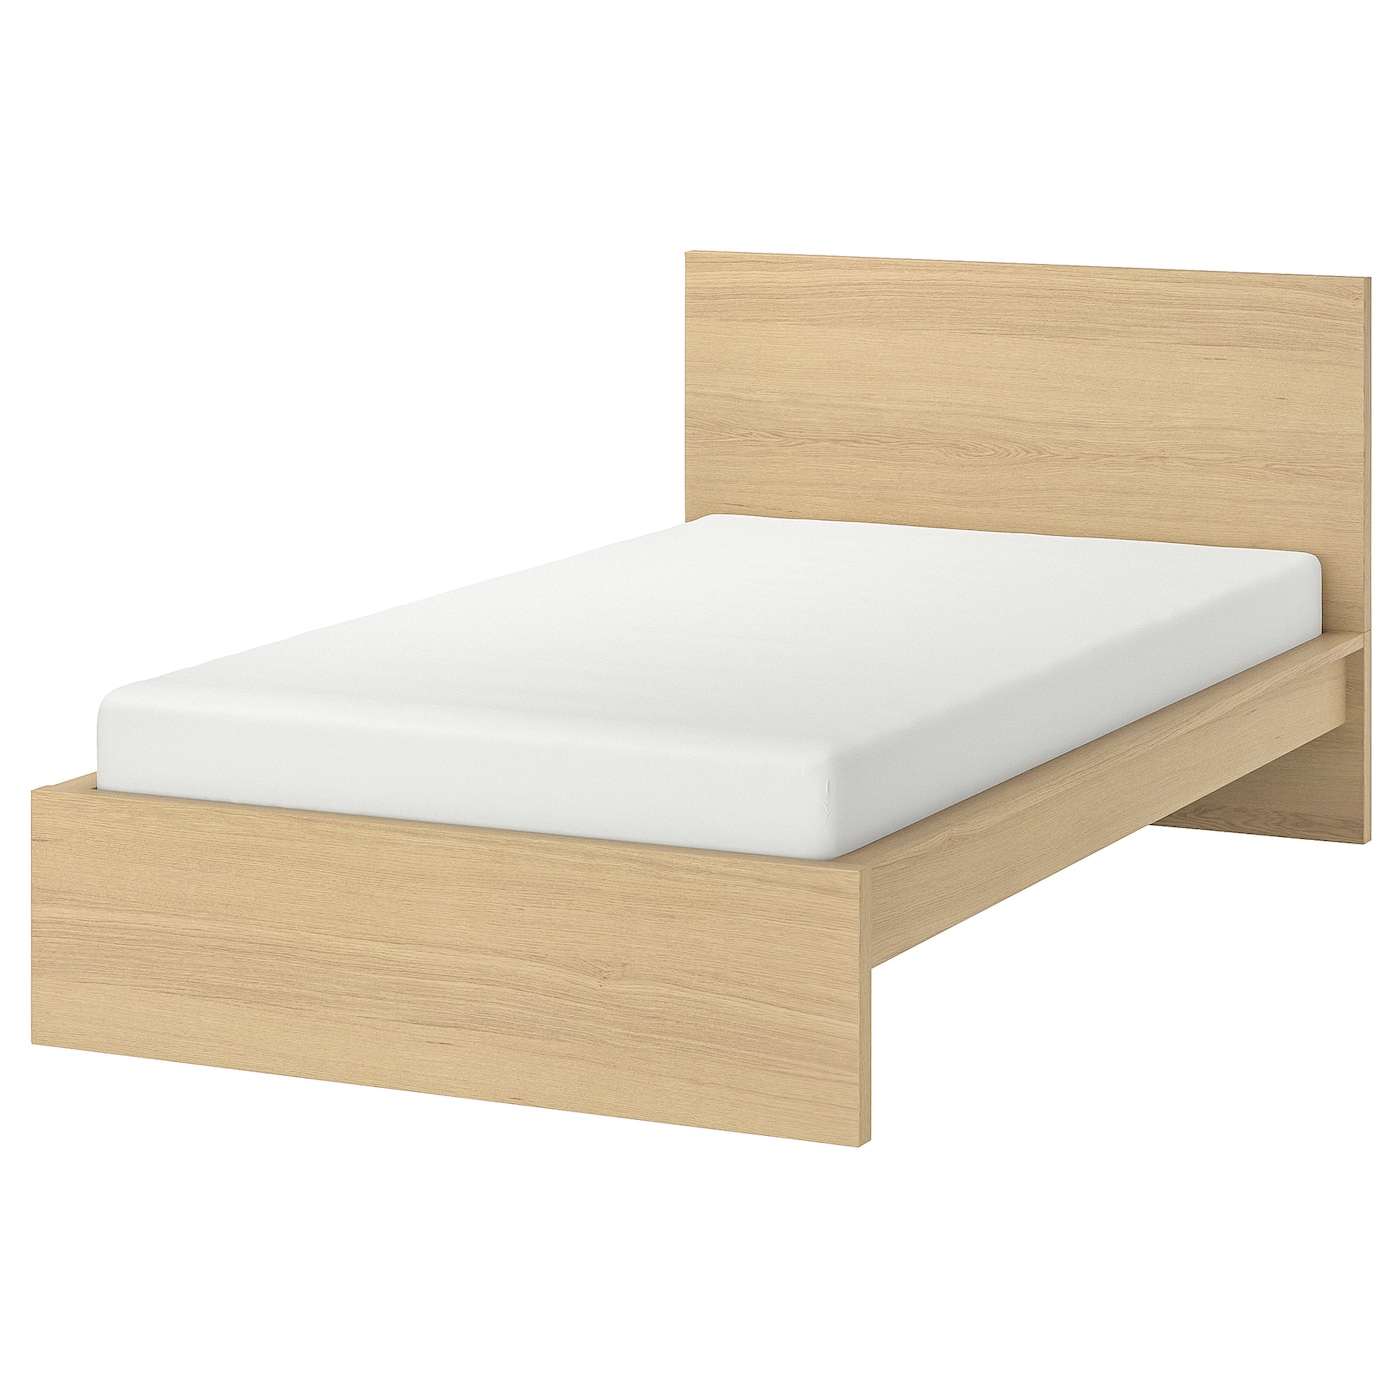 Каркас кровати - IKEA MALM, 200х120 см, шпон беленого дуба, МАЛЬМ ИКЕА